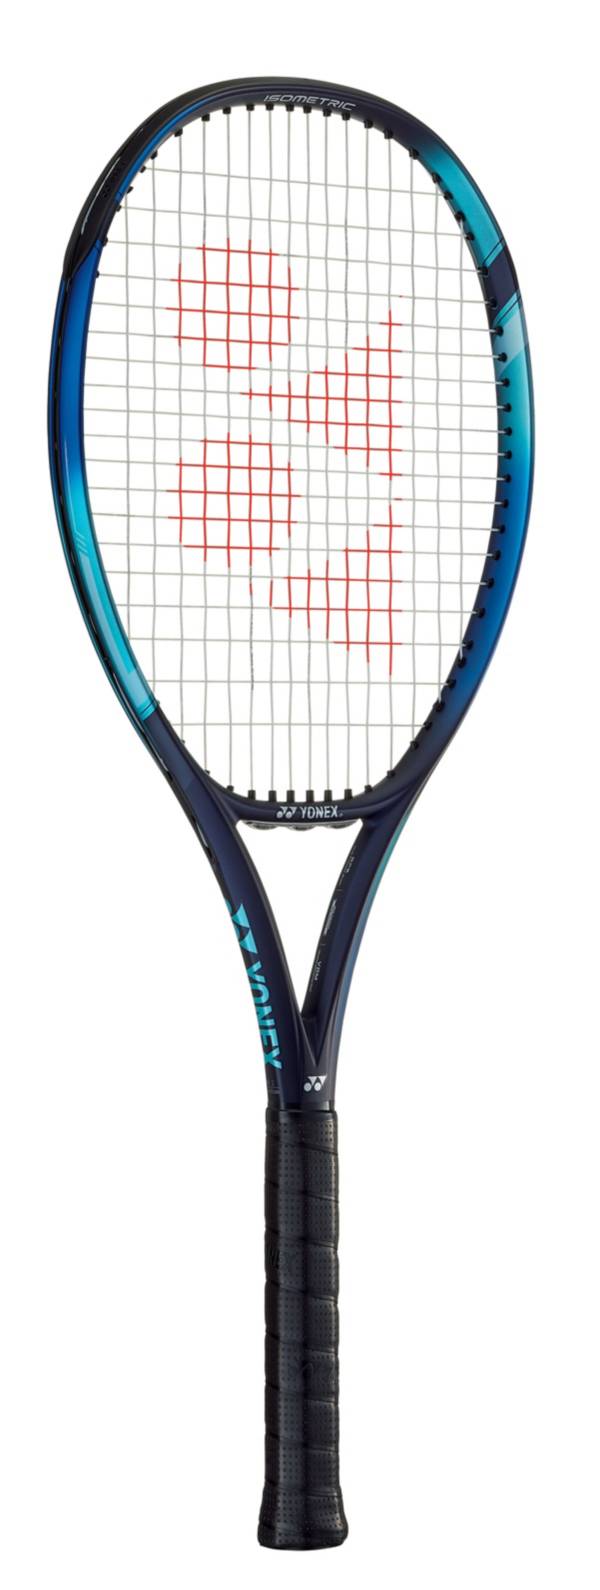 Yonex Ezone 100 Tennis Racquet - Unstrung product image